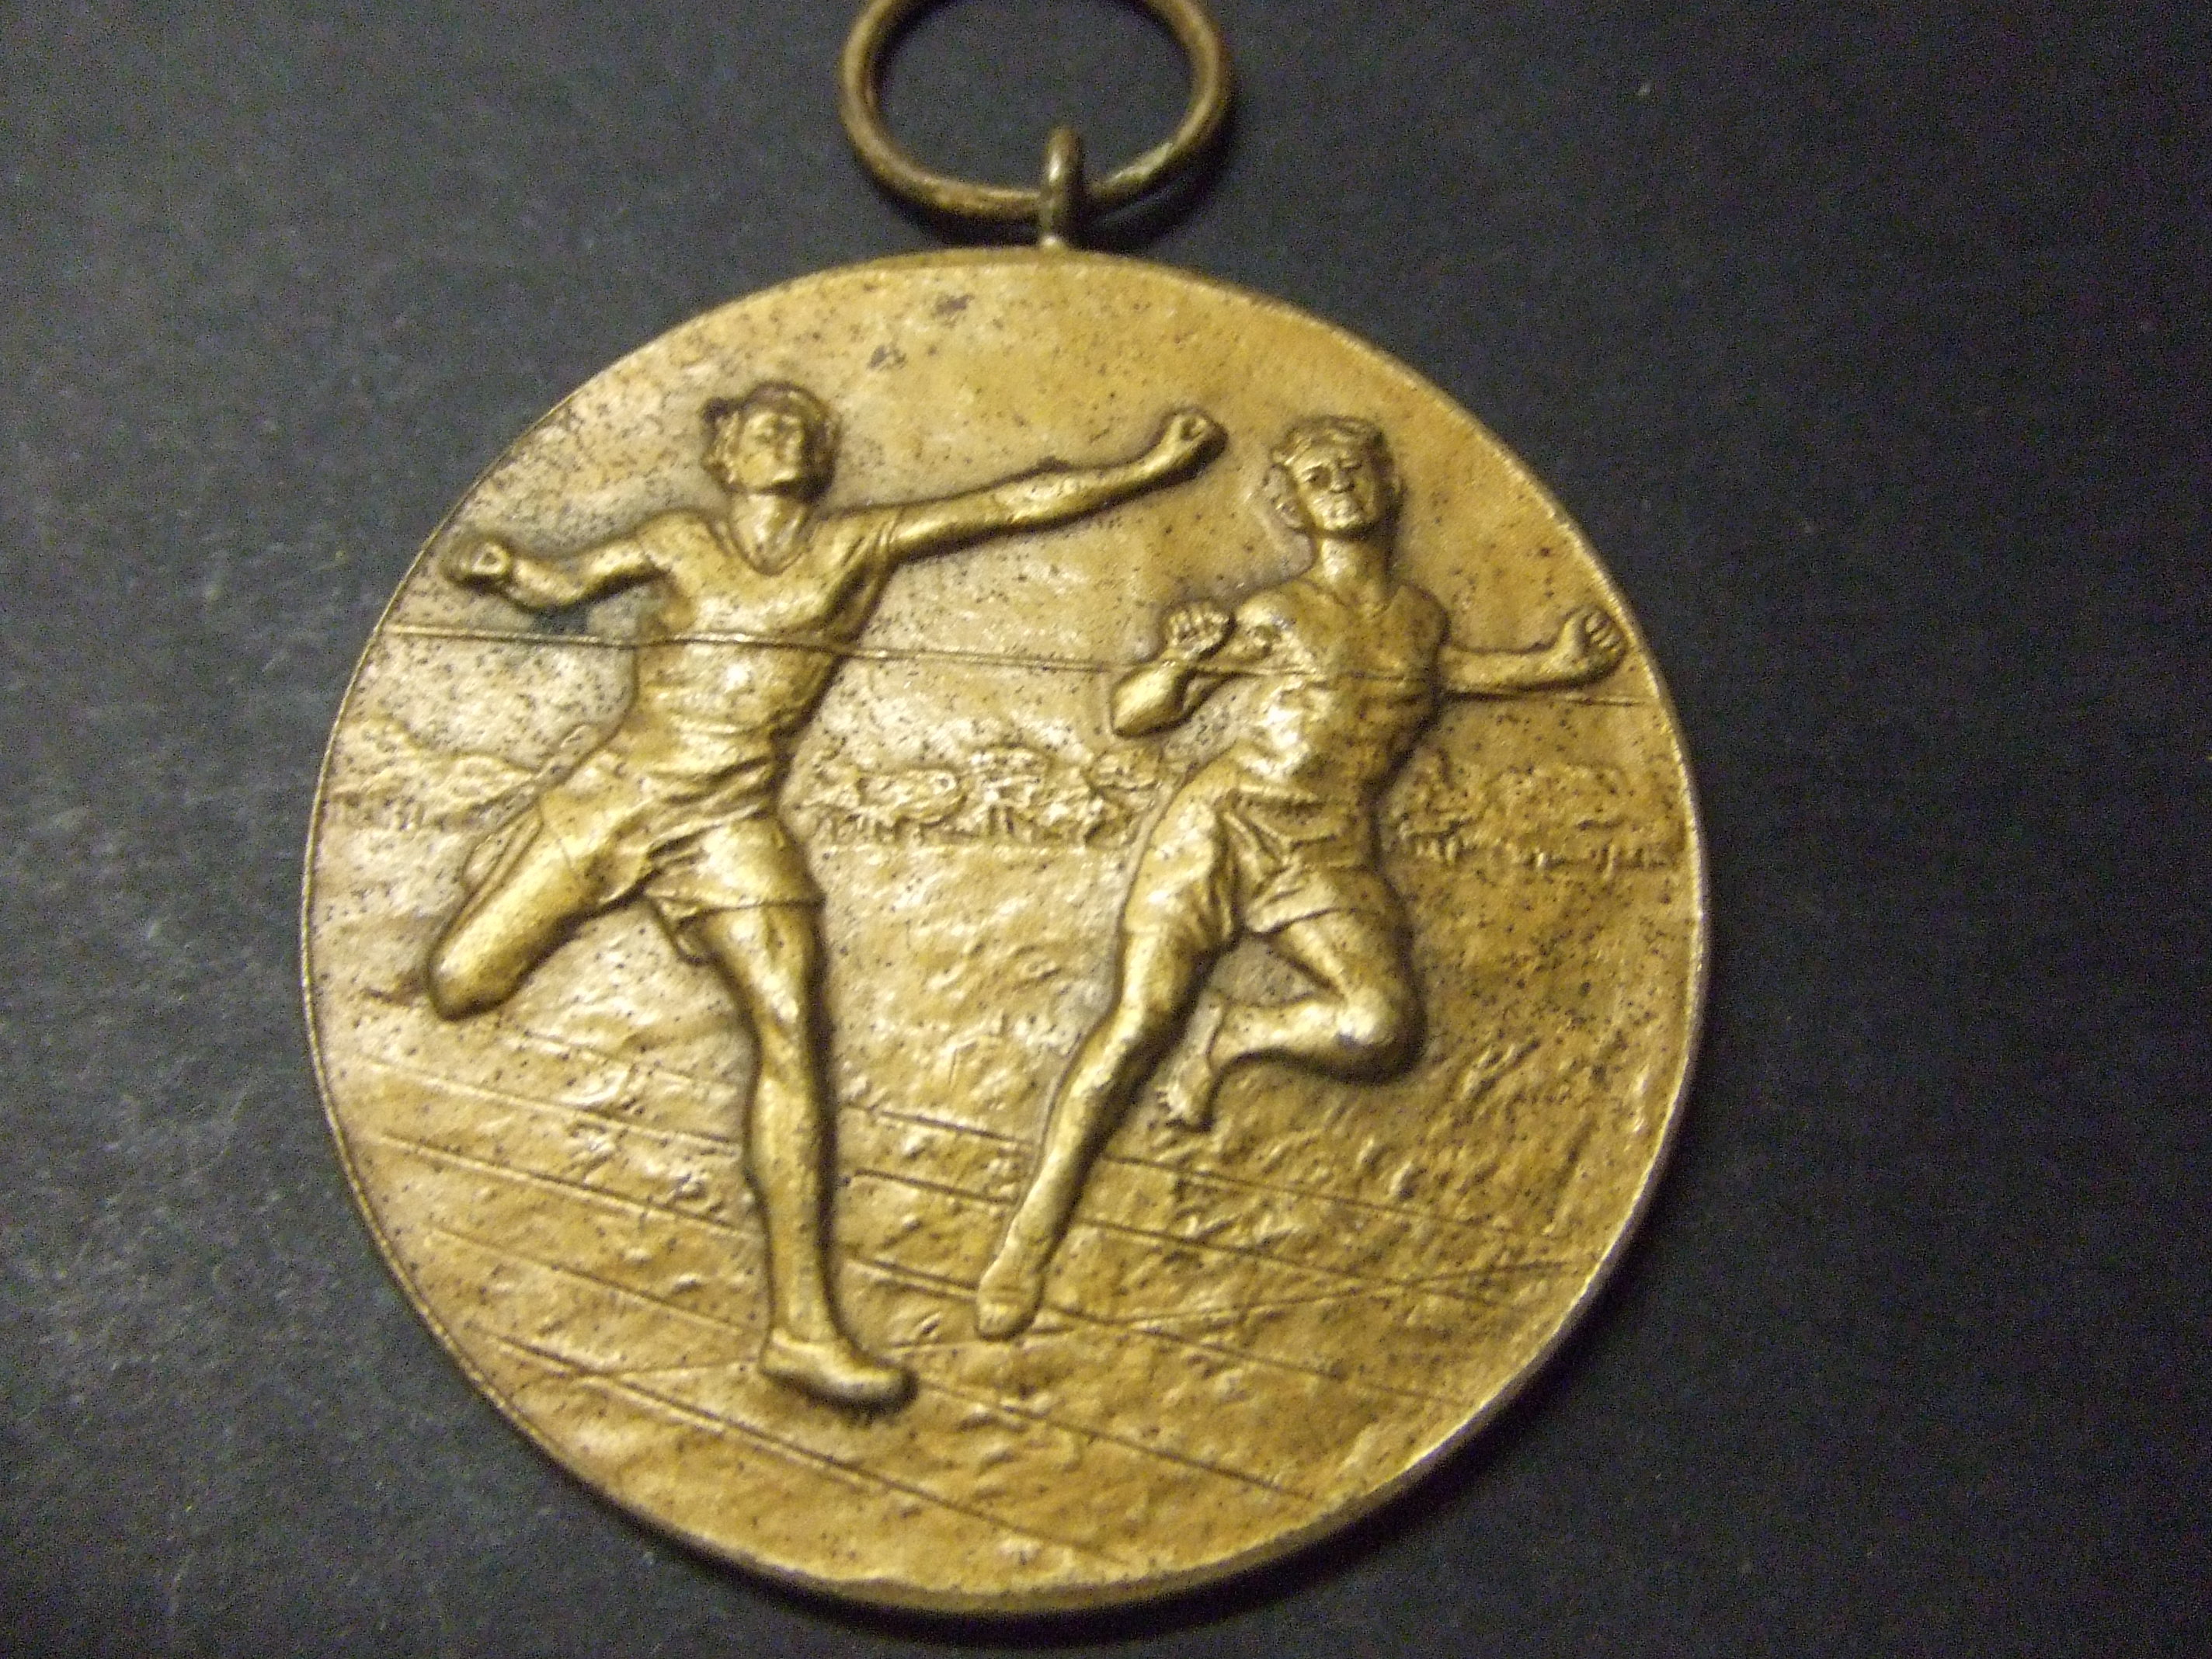 Hardlopen 2e prijs 100 meter sprint D.S.V.1946